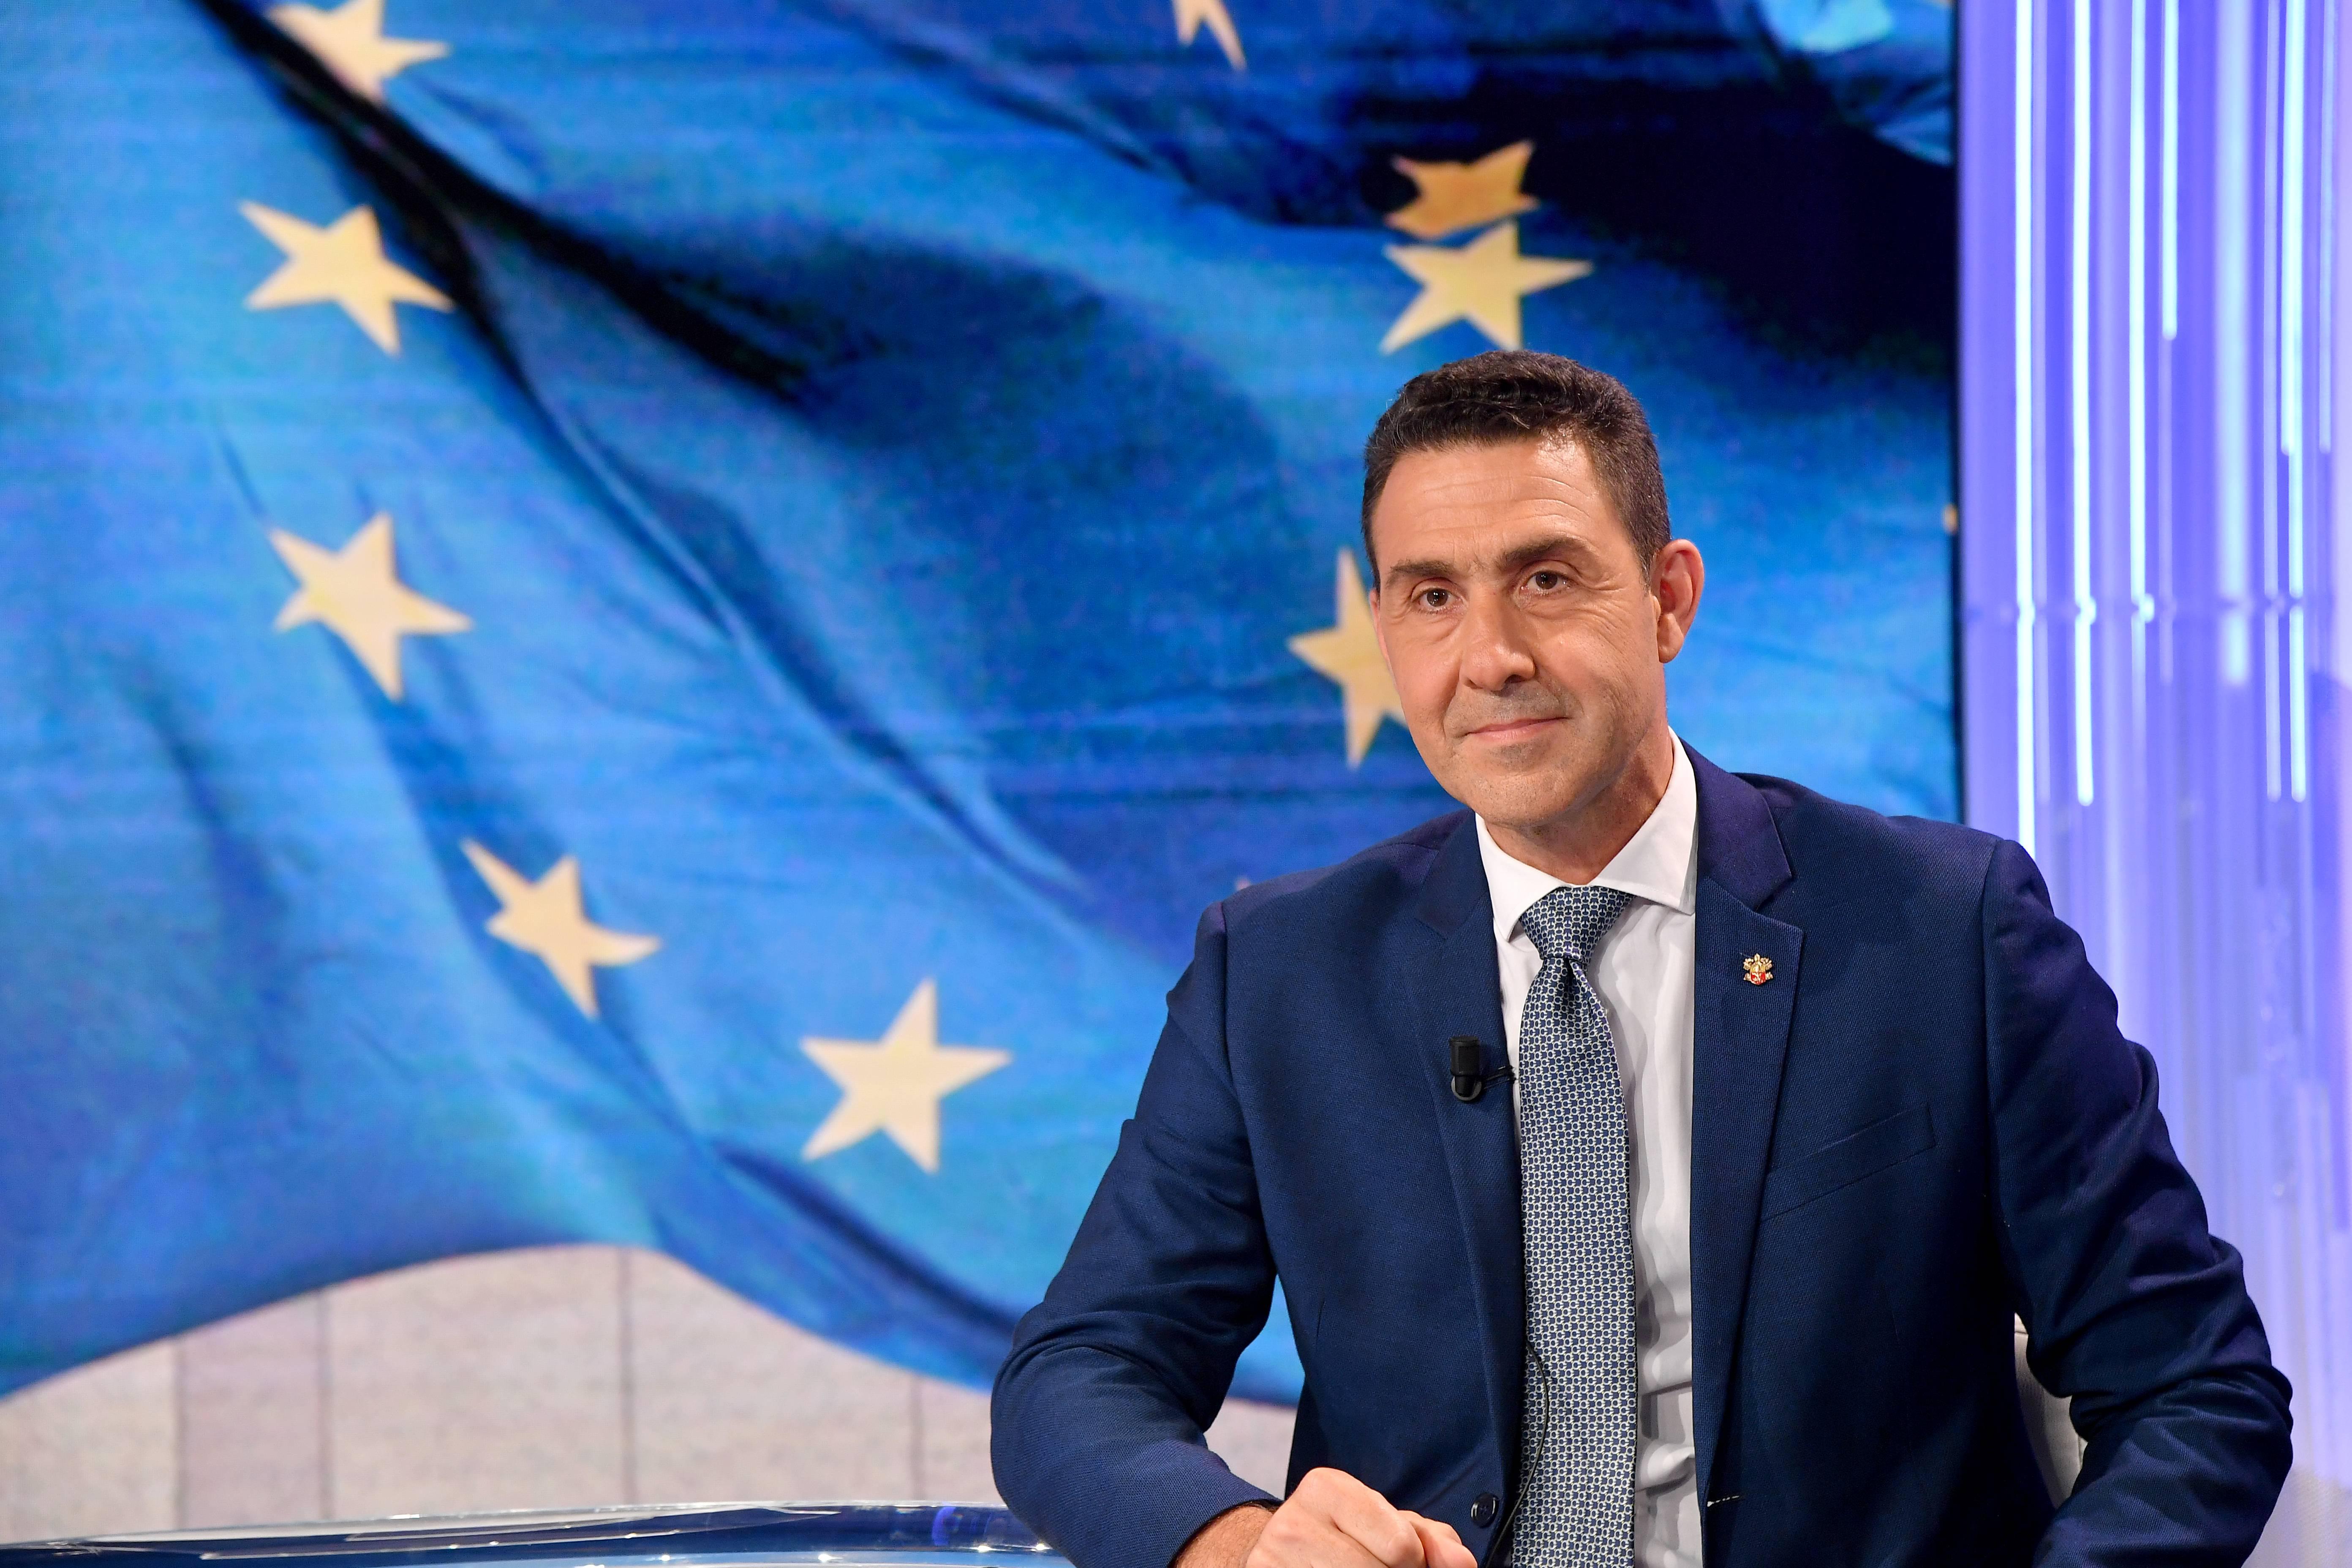 Europee - la scelta di Vannacci decisiva: 4 leghisti per 3 seggi